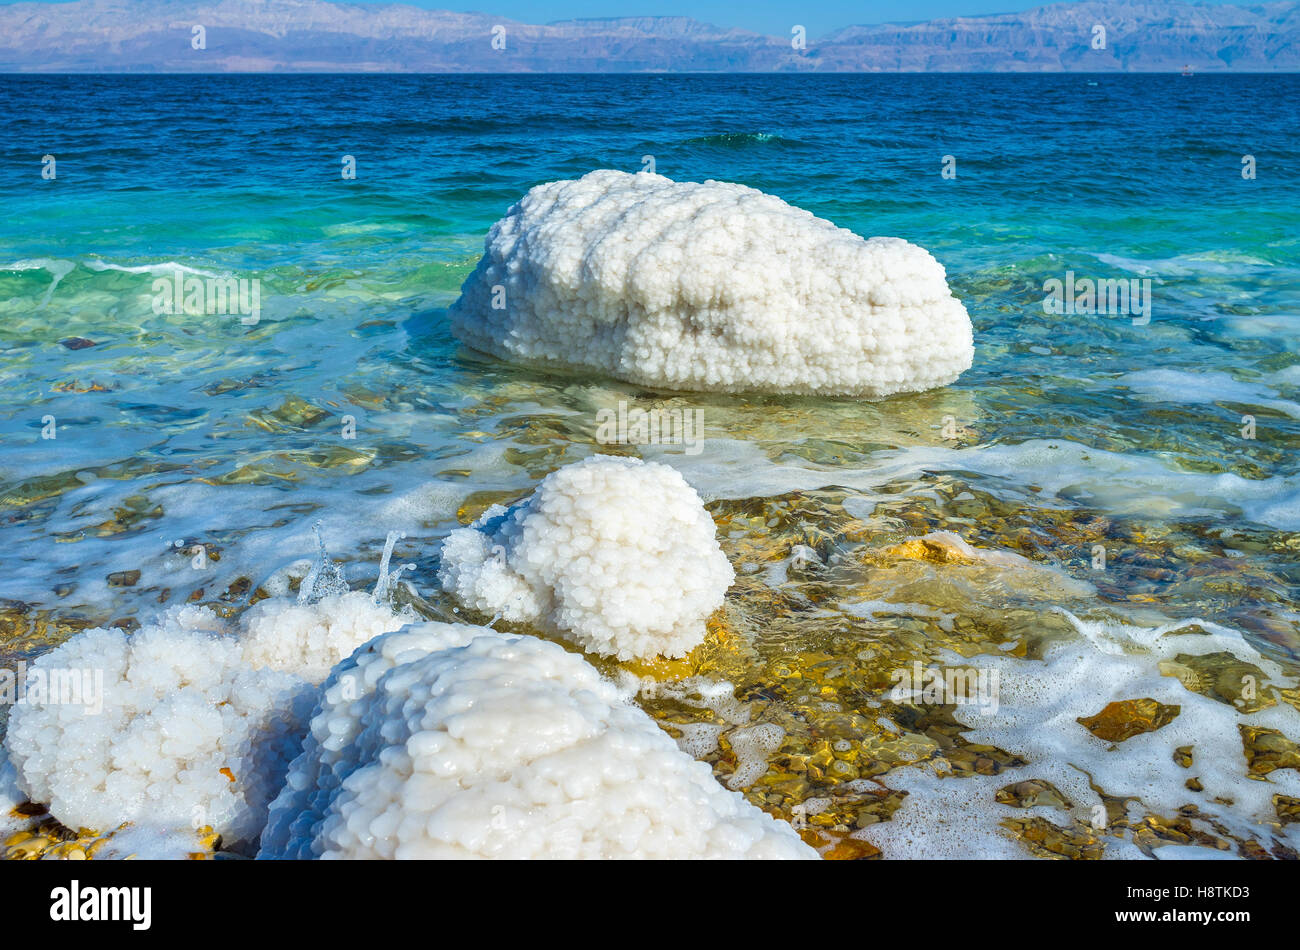 Das Tote Meer war einer der ersten Kurorte der Welt, berühmt für seine balneologischen Eigenschaften, Ein Gedi, Israel. Stockfoto